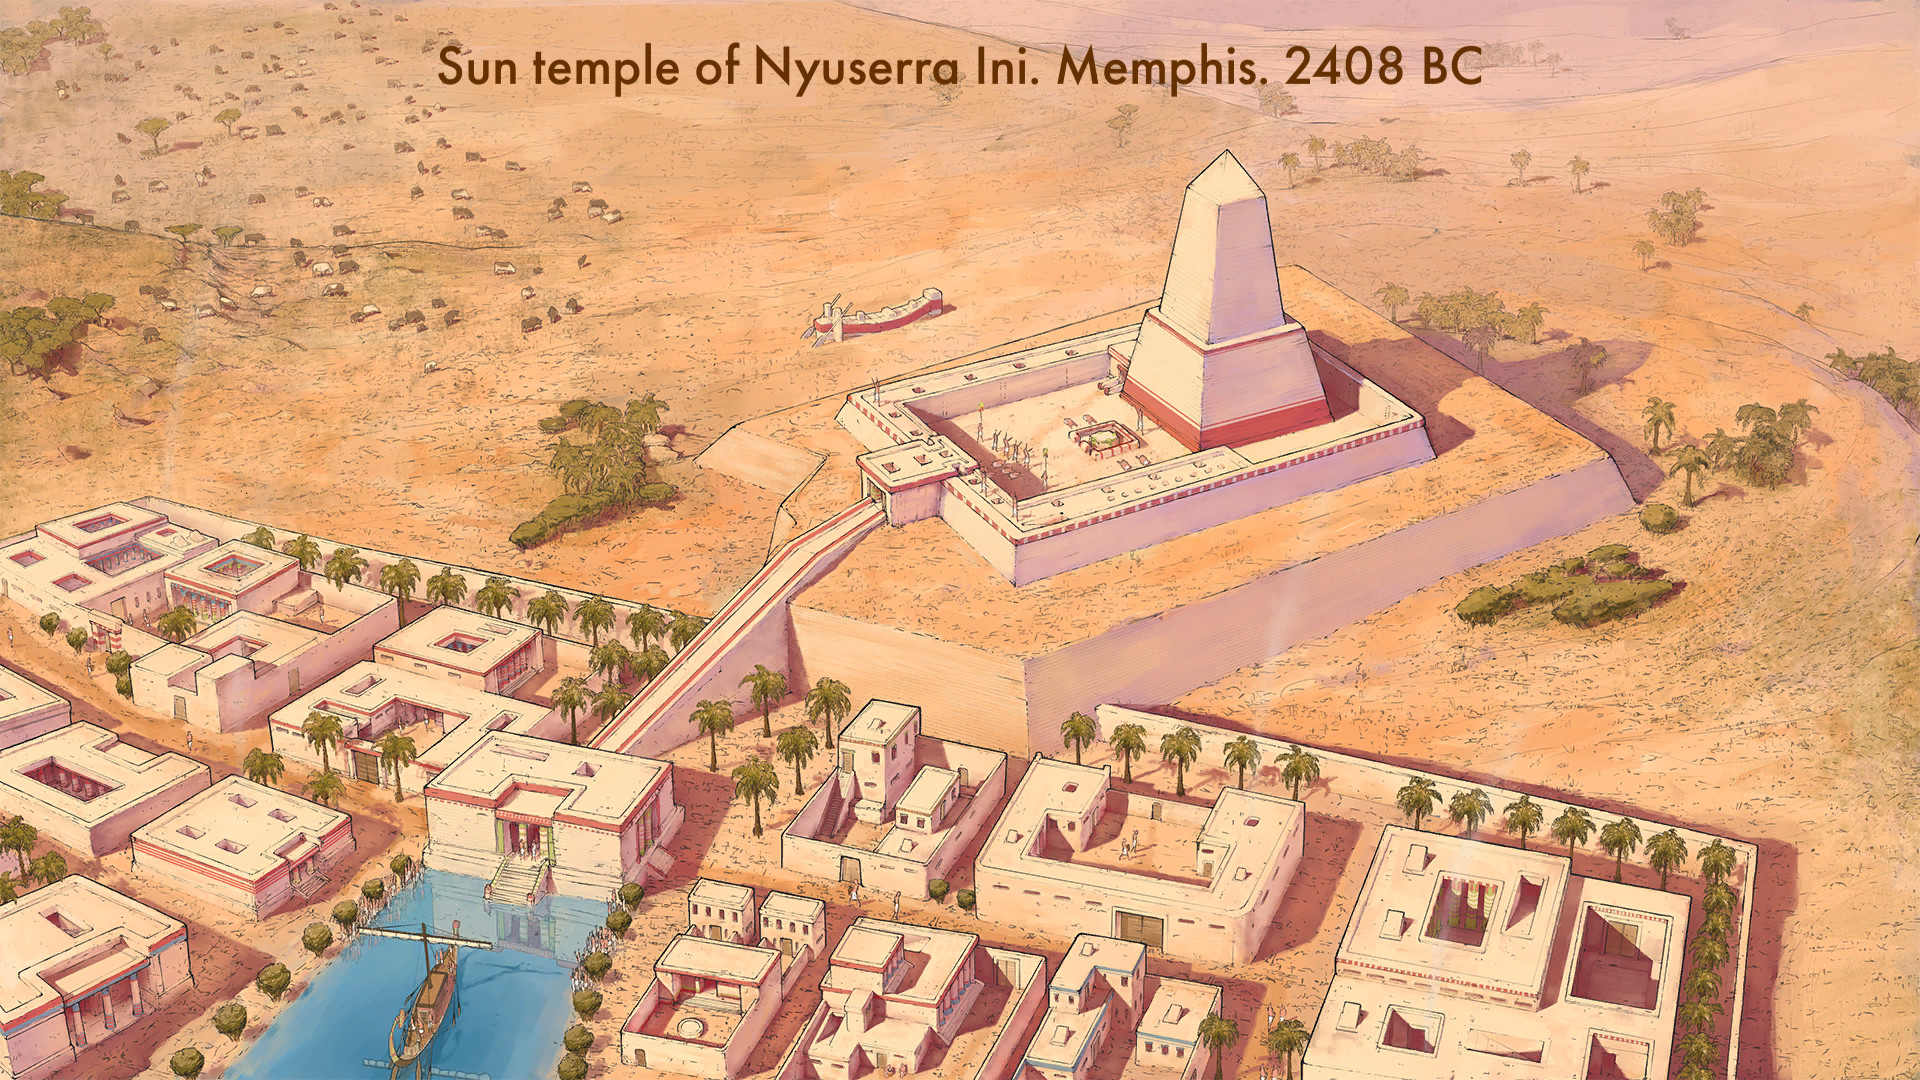 Trò chơi chiến lược di động tốt nhất: Ai Cập: Vương quốc cũ. Hình ảnh cho thấy một khu định cư Ai Cập cổ đại, với văn bản đọc